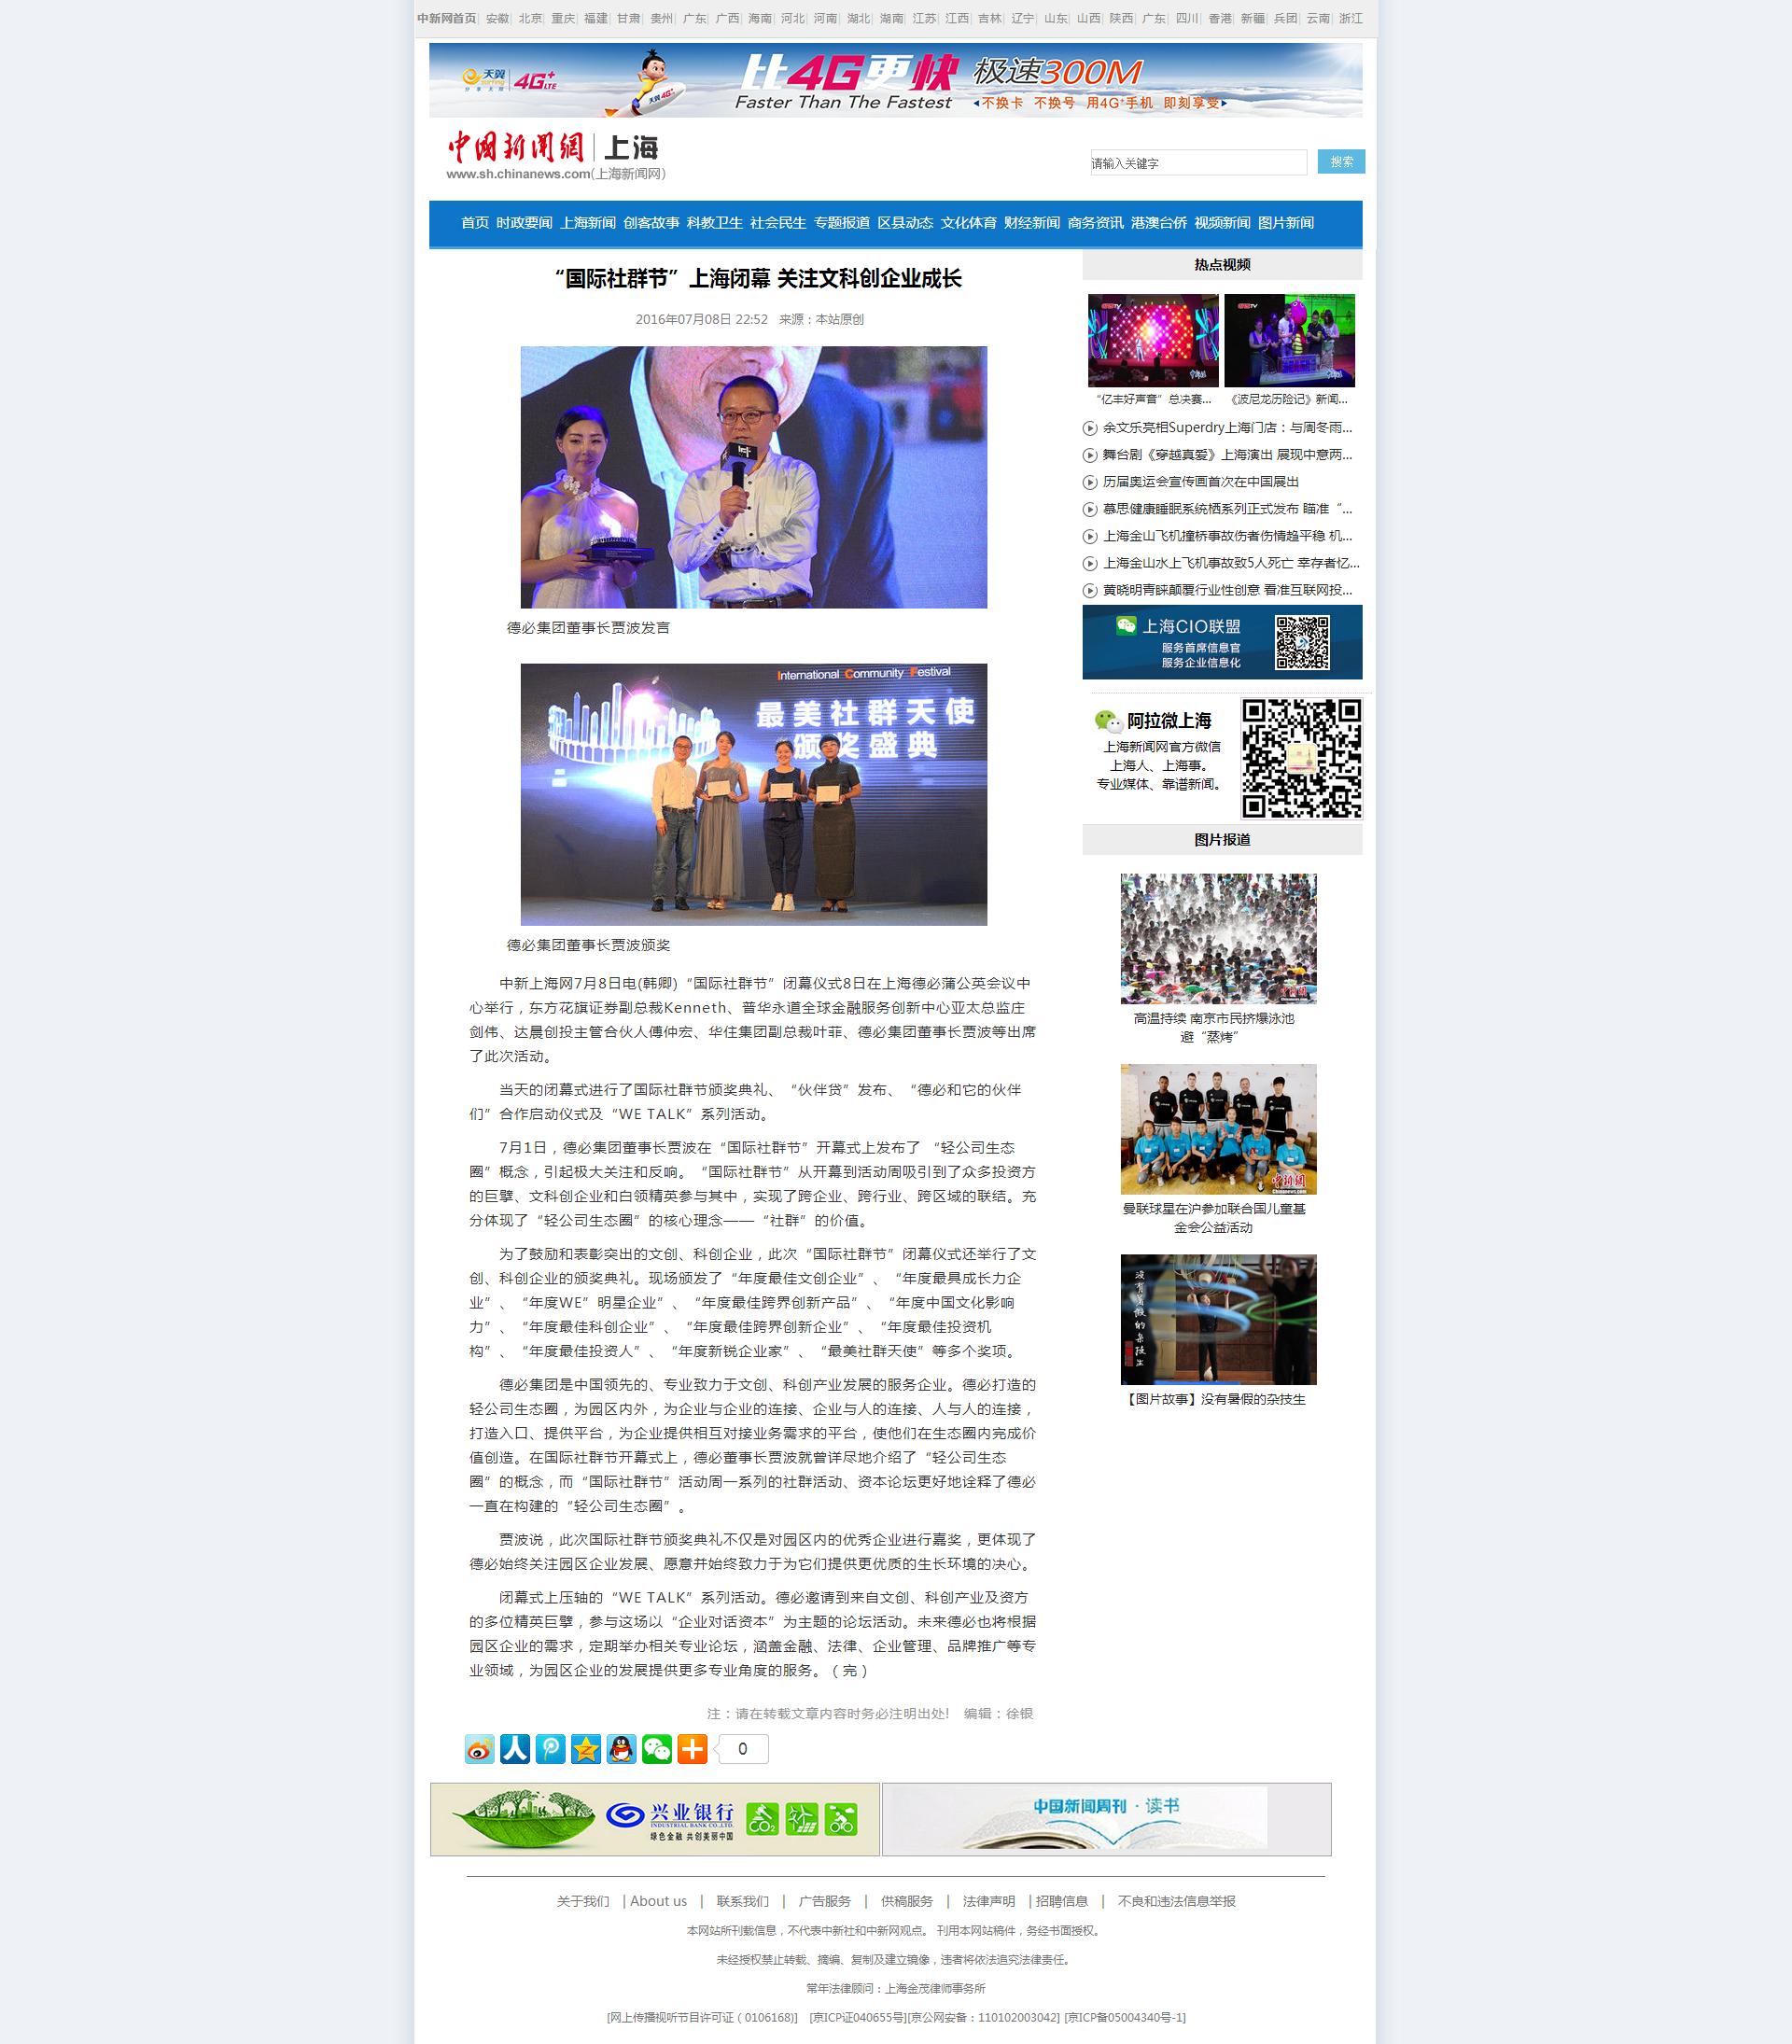 “国际社群节”上海闭幕 关注文科创企业成长 - 上海新闻网.png